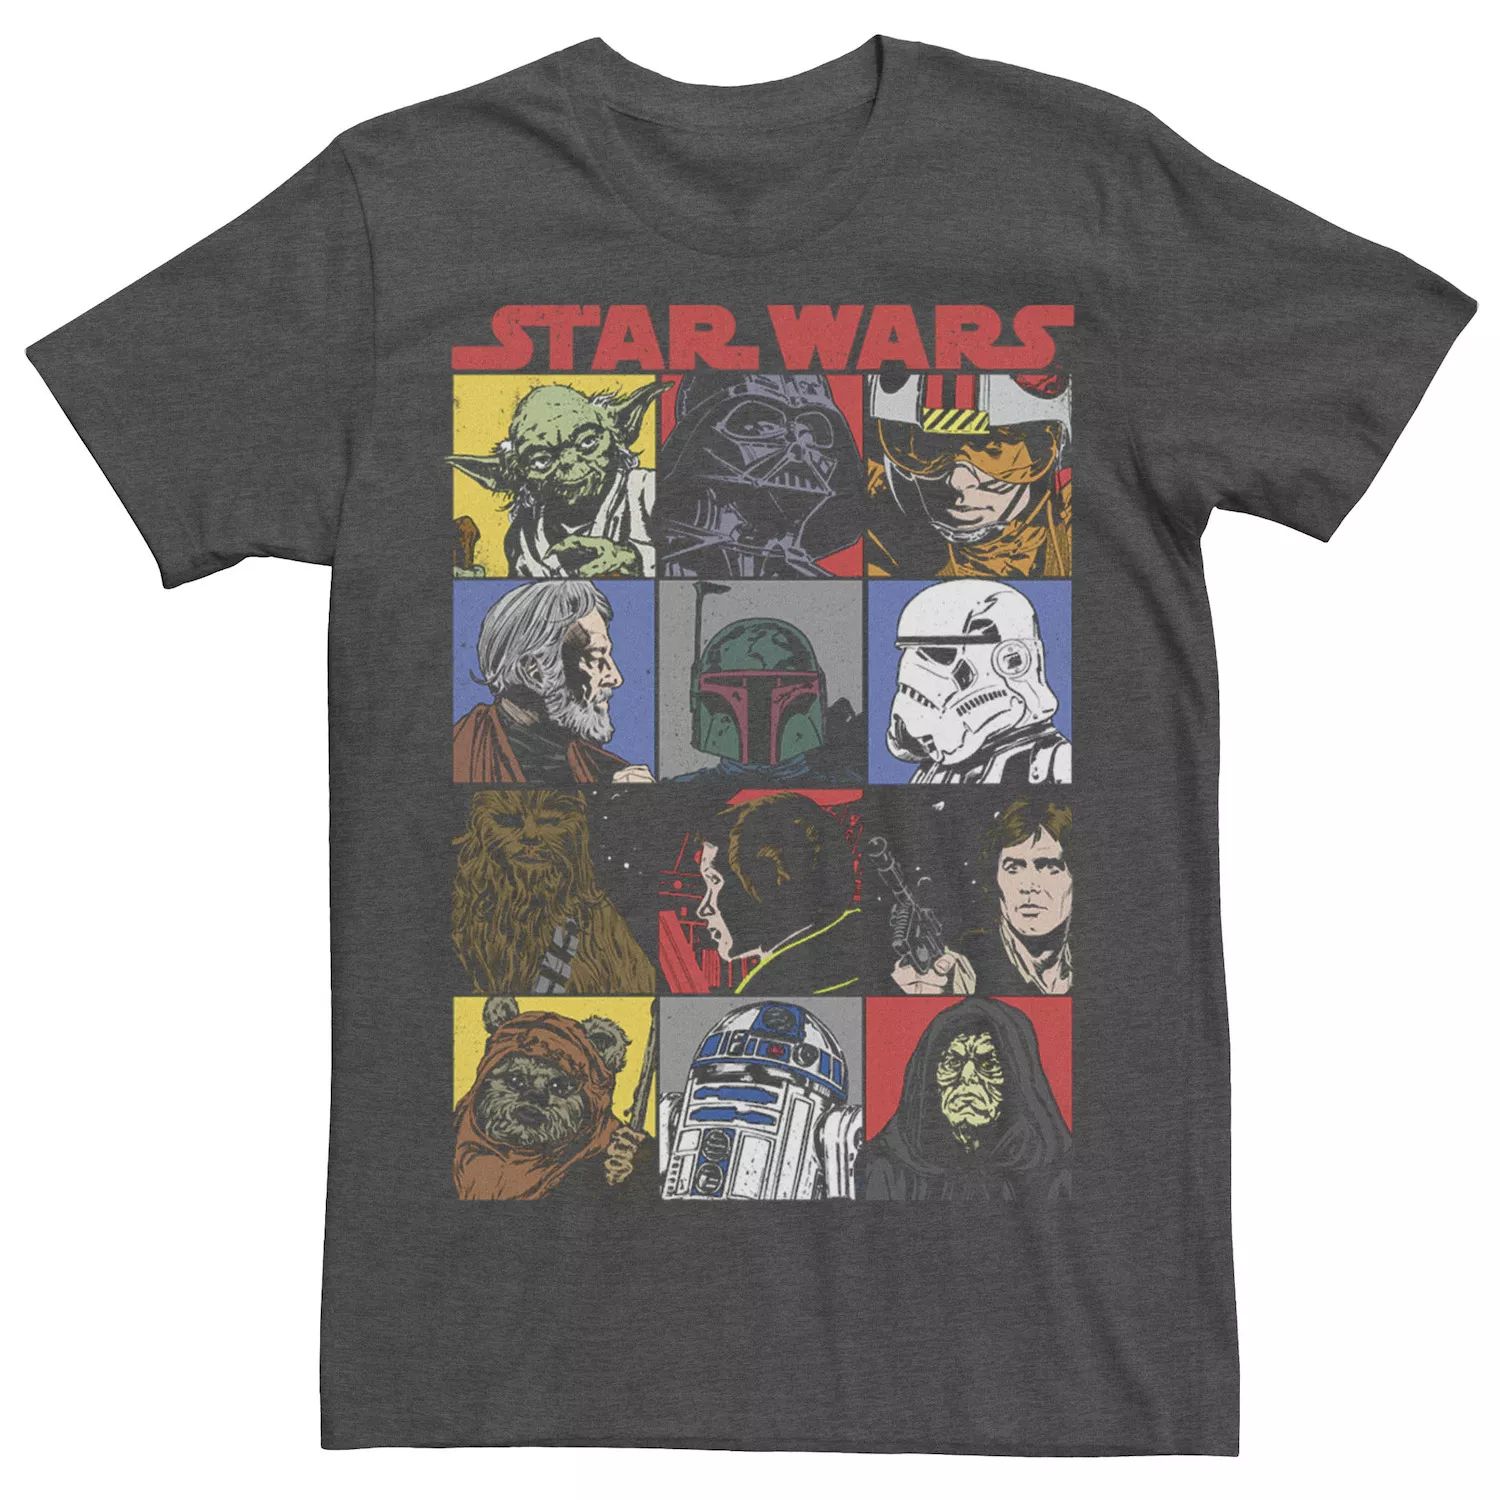 Мужская футболка с героями комиксов и героями мультфильмов Star Wars